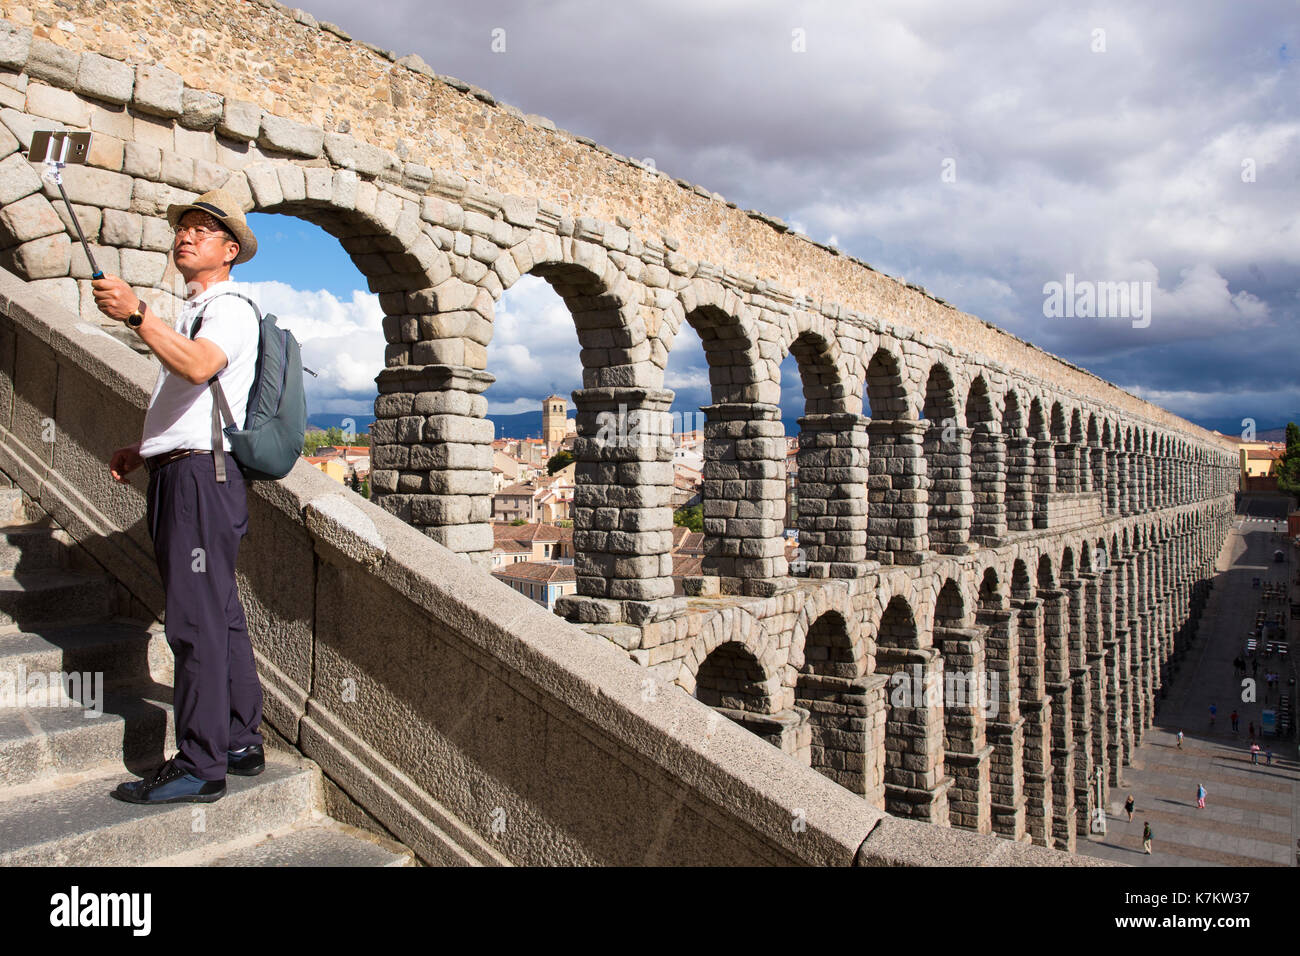 Prendre des photographies touristiques selfies sur smartphone Avec bâton à selfies spectaculaire célèbre aqueduc romain, Segovia, Espagne Banque D'Images